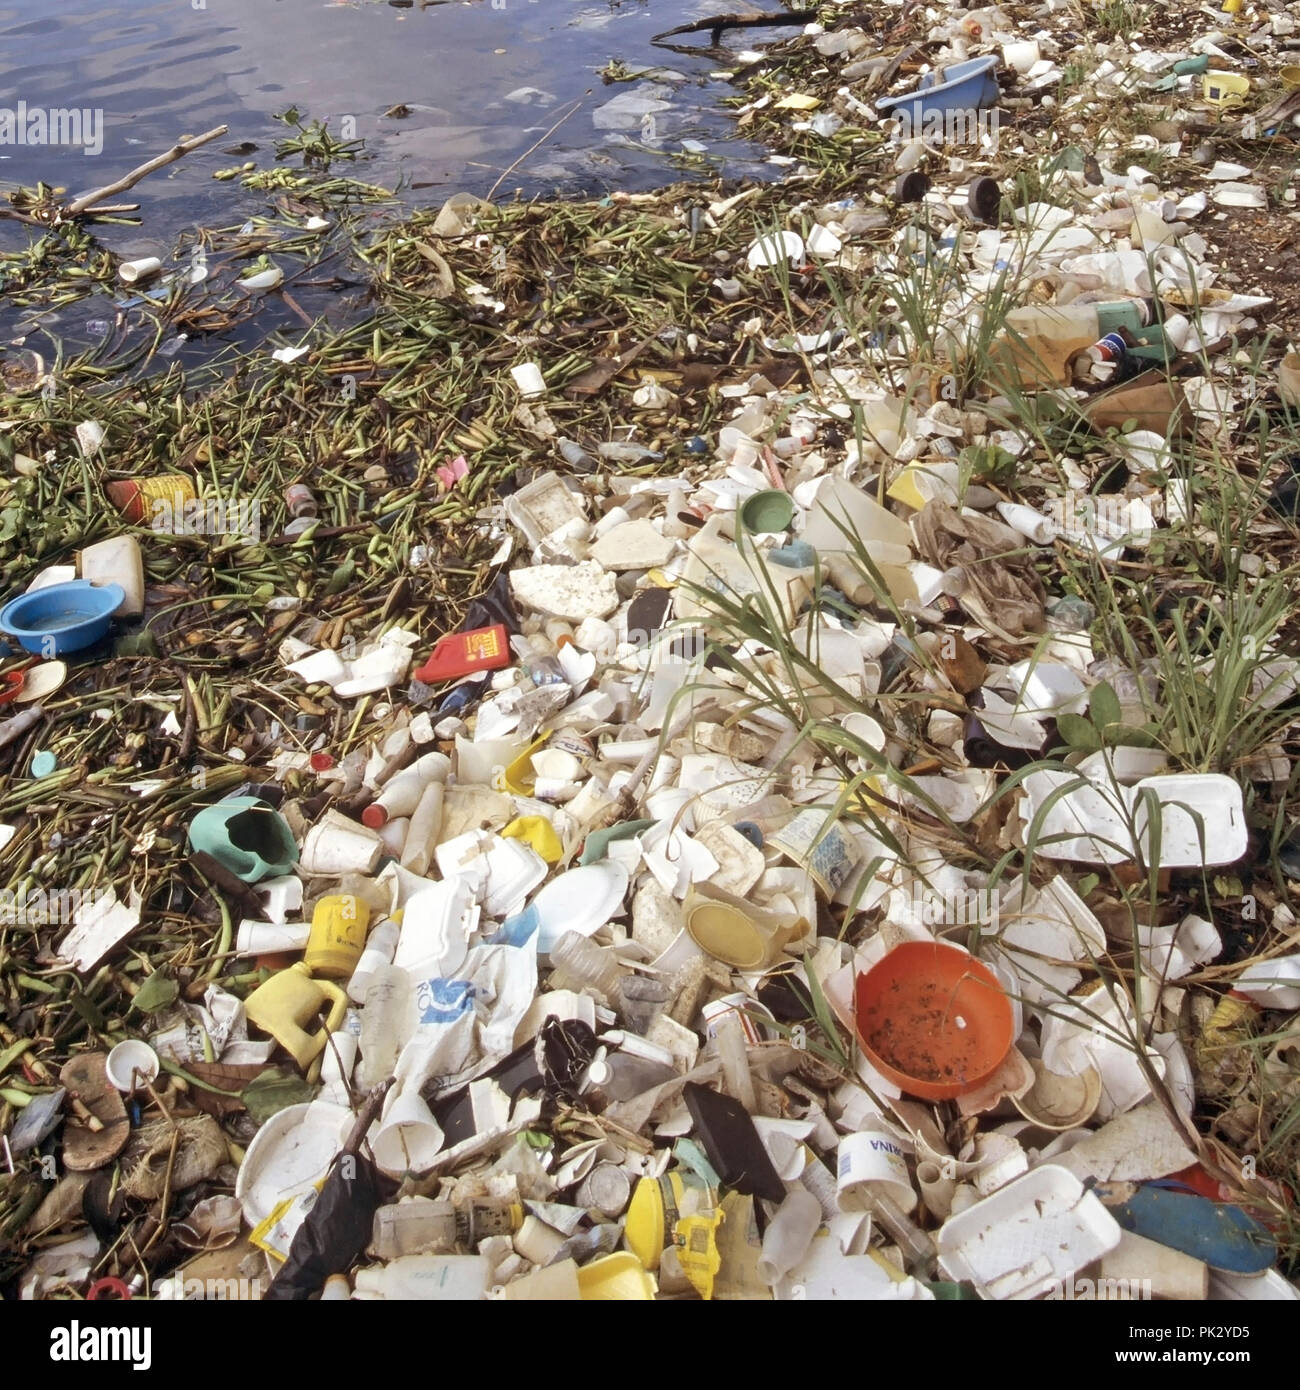 Inquinamento del Mare selezione di scartato floating rifiuti di imballaggi in plastica detriti cucciolata indesiderata immondizia lavato fino litorale Repubblica Dominicana Mar dei Caraibi Foto Stock